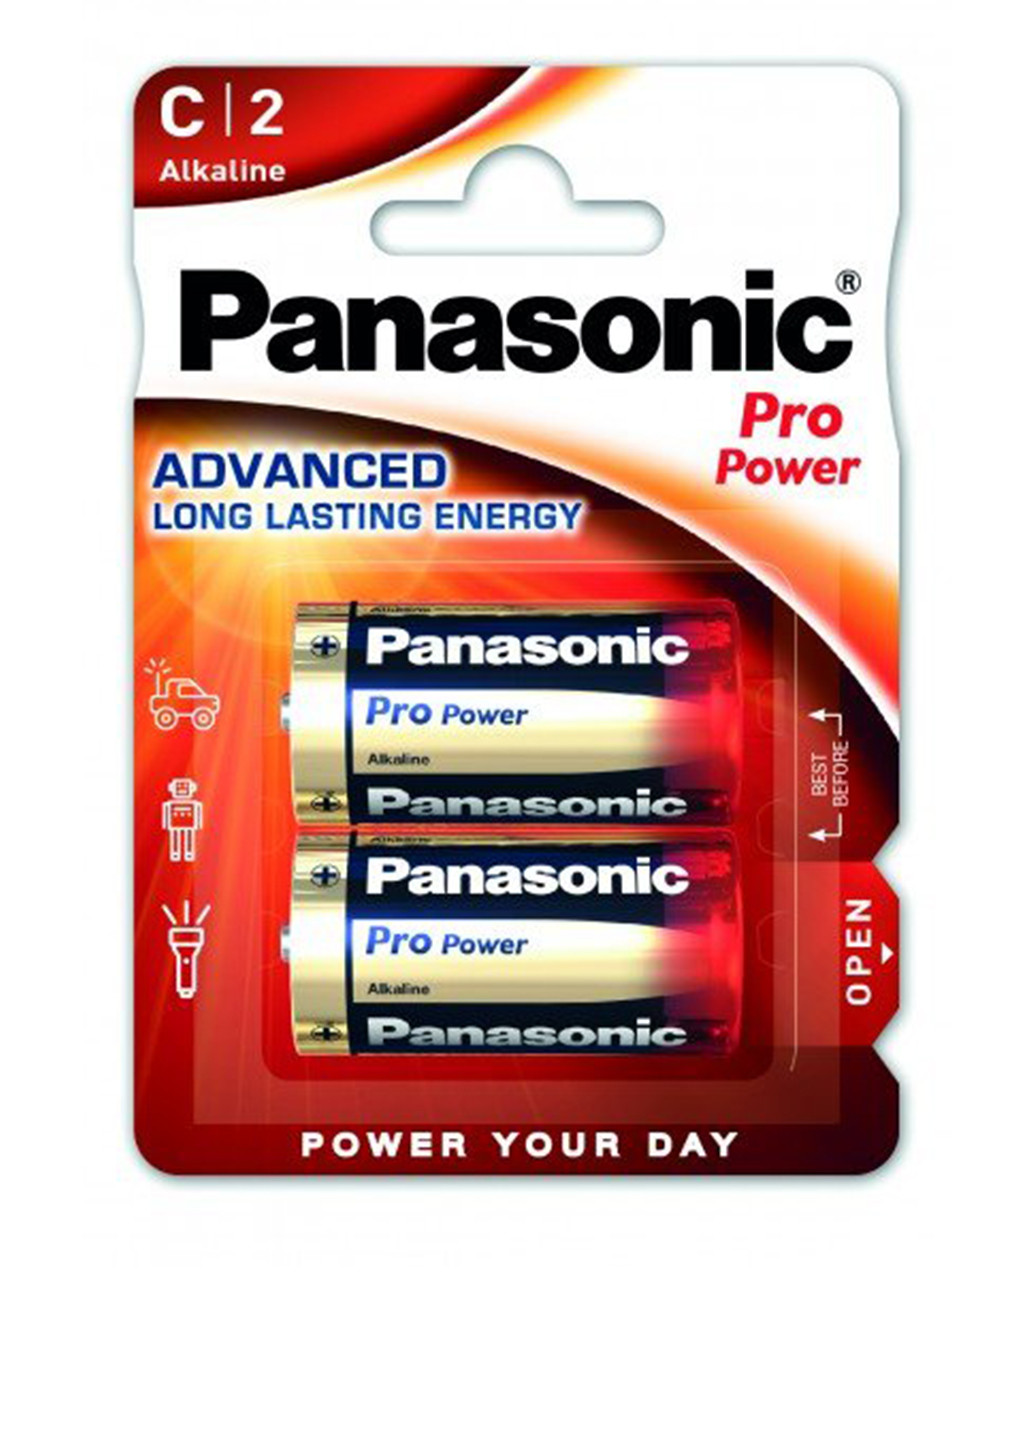 Батарейка Panasonic pro power c bli 2 alkaline (lr14xeg/2bp) (138004319)